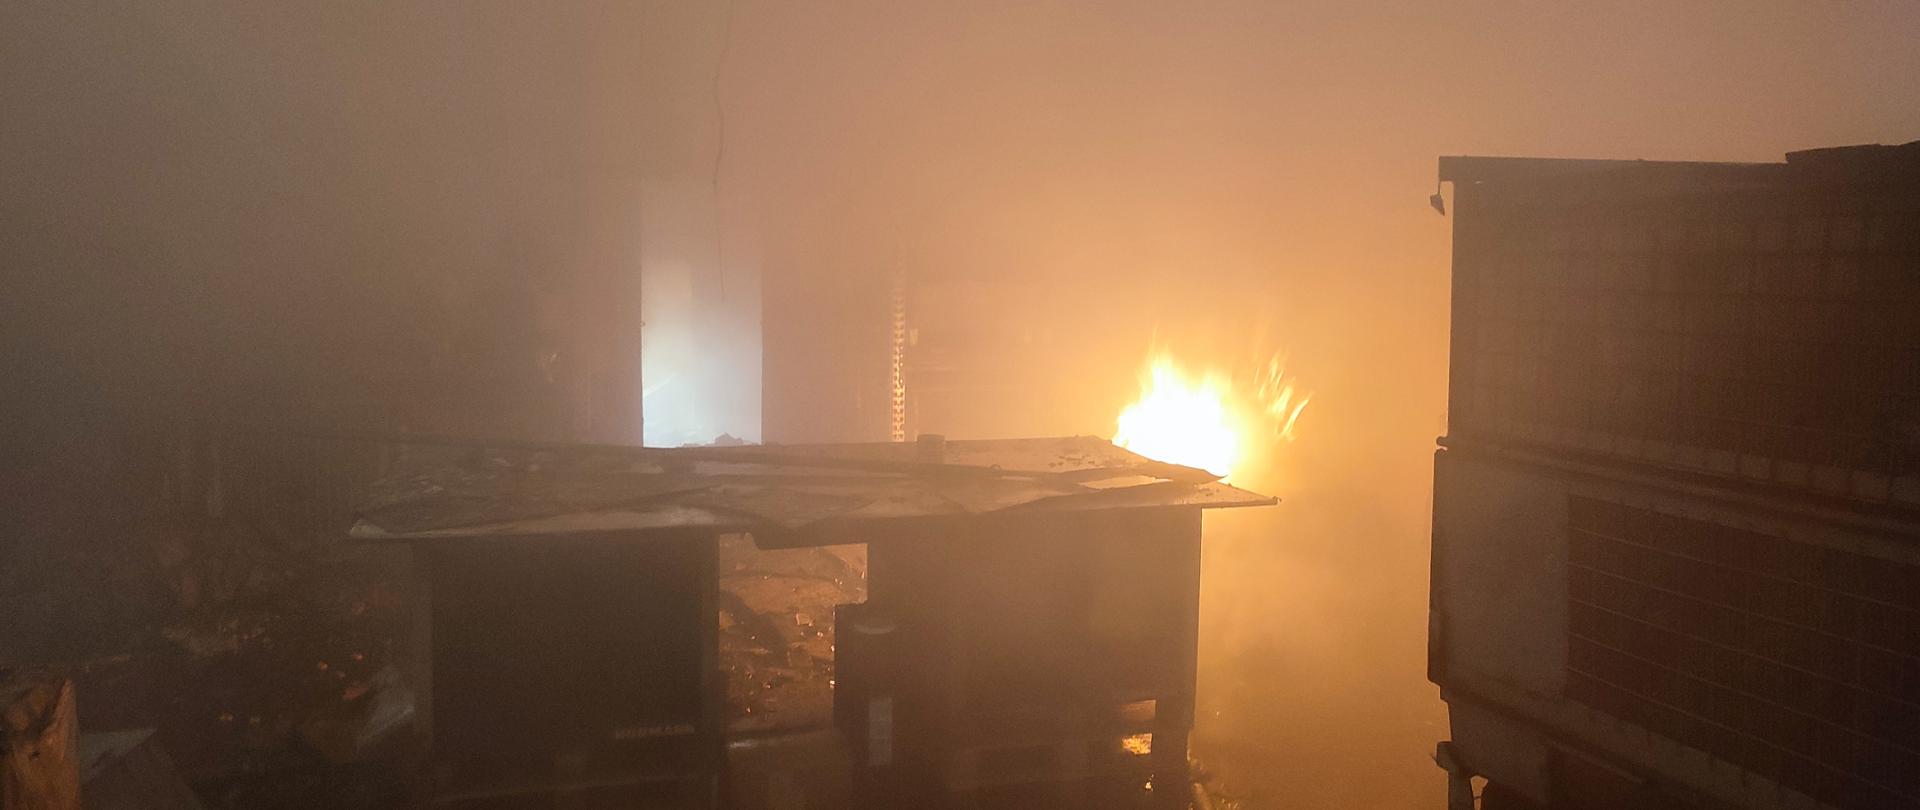 Zdjęcie ukazuje płomień przy regale pomieszczenia, które było objęte pożarem. W pomieszczeniu panuje zadymienie. 